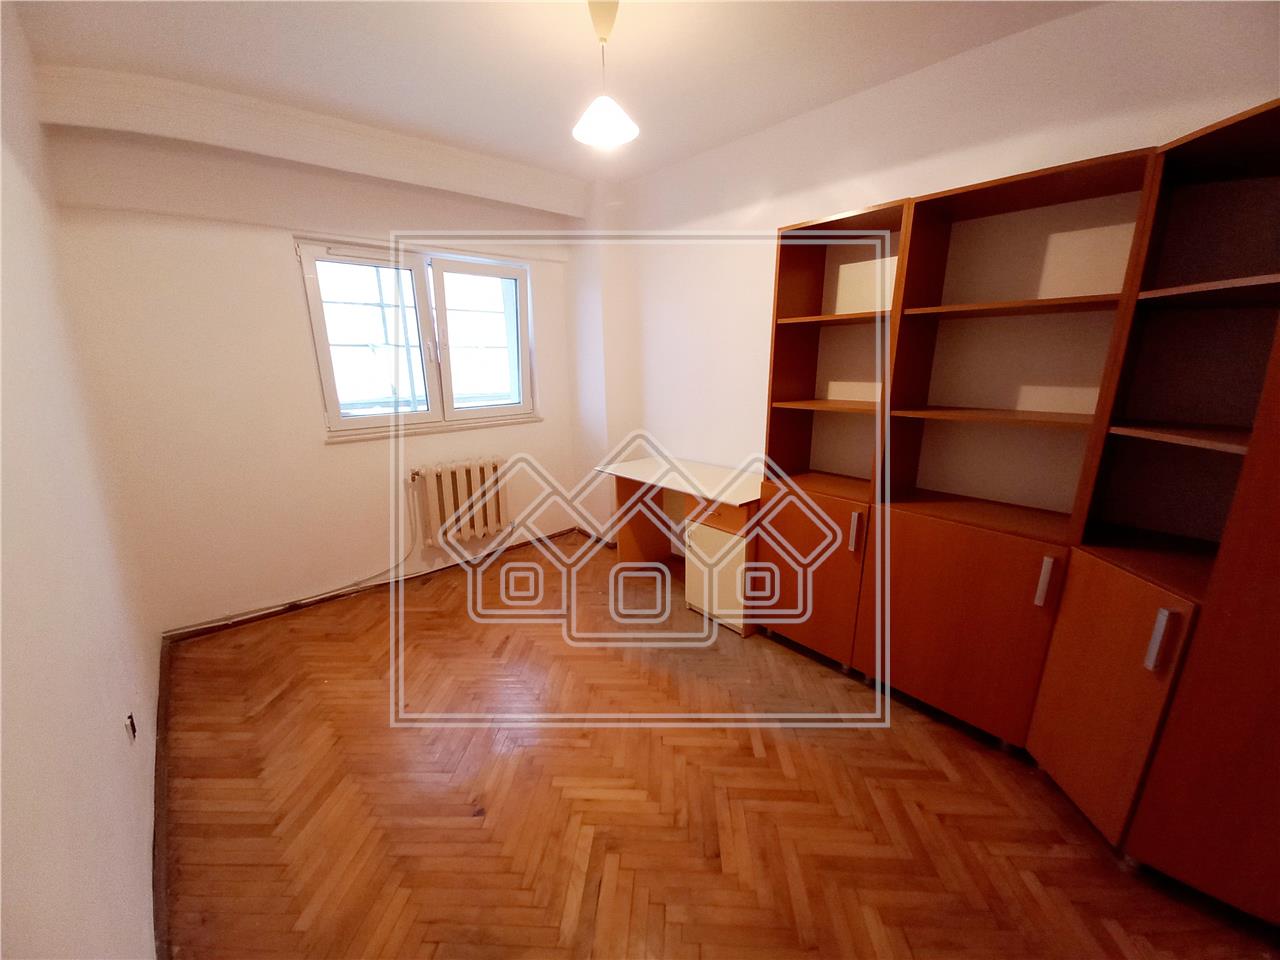 Apartament de inchiriat in Alba Iulia - 3 camere - zona Cetate